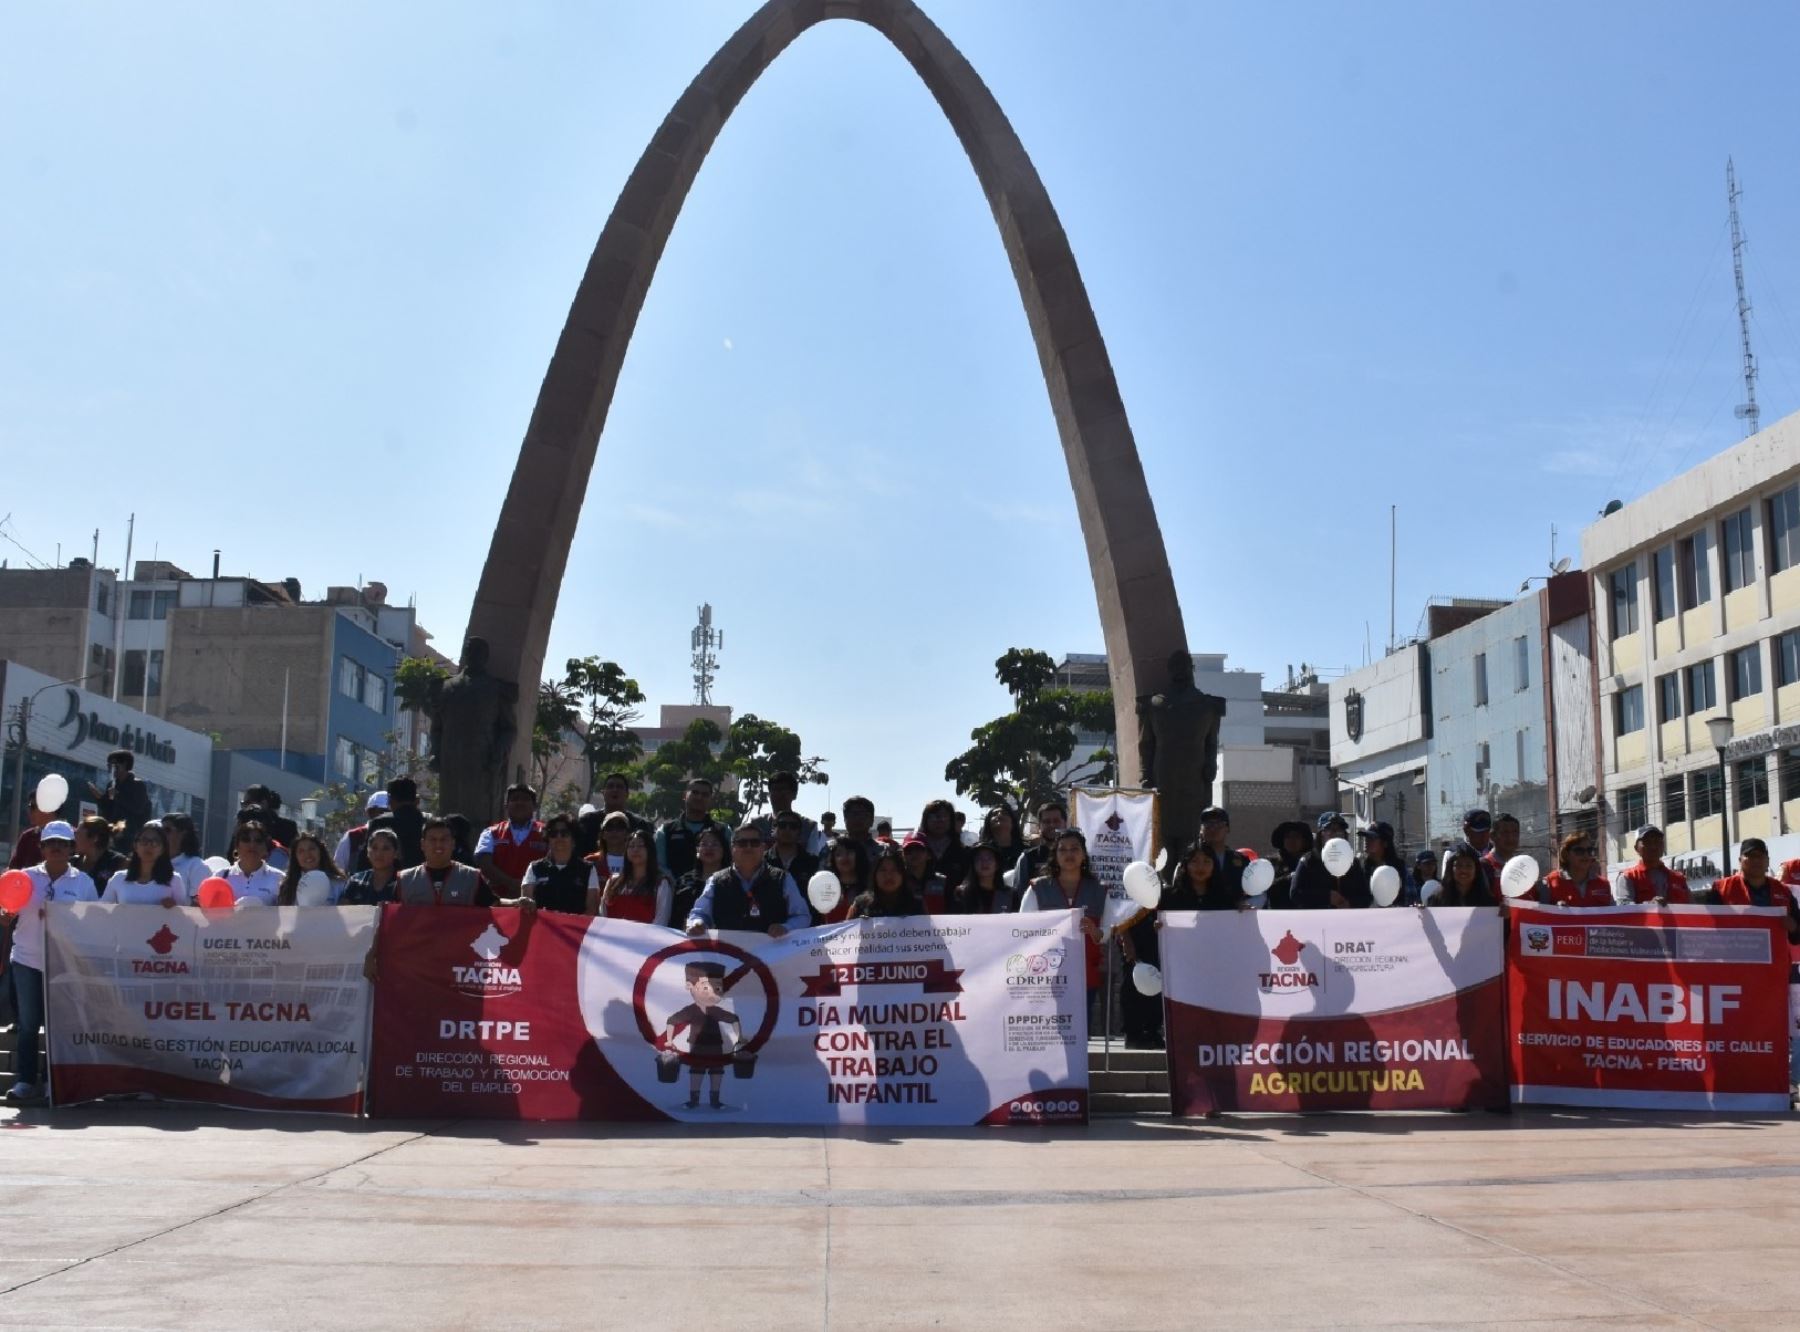 Autoridades, estudiantes y pobladores de Tacna marcharon por el Día Mundial contra el Trabajo Infantil y pidieron la erradicación de ese flagelo. ANDINA/Difusión